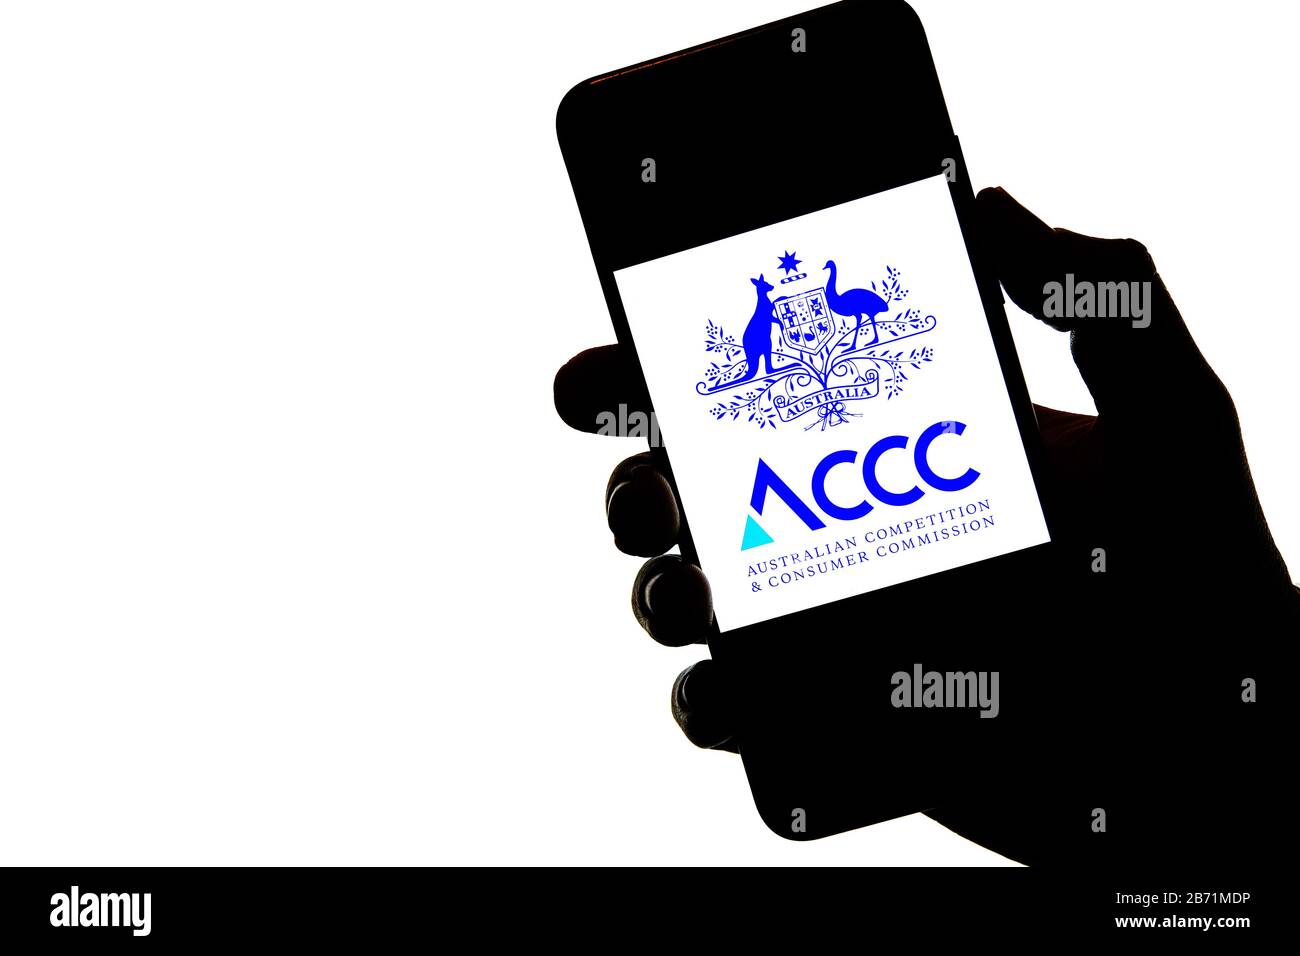 Stone / Royaume-Uni - Mars 11 2020: ACCC Australian Competition and Consumer Commission logo sur la silhouette de téléphone mobile tenir dans une main. Banque D'Images